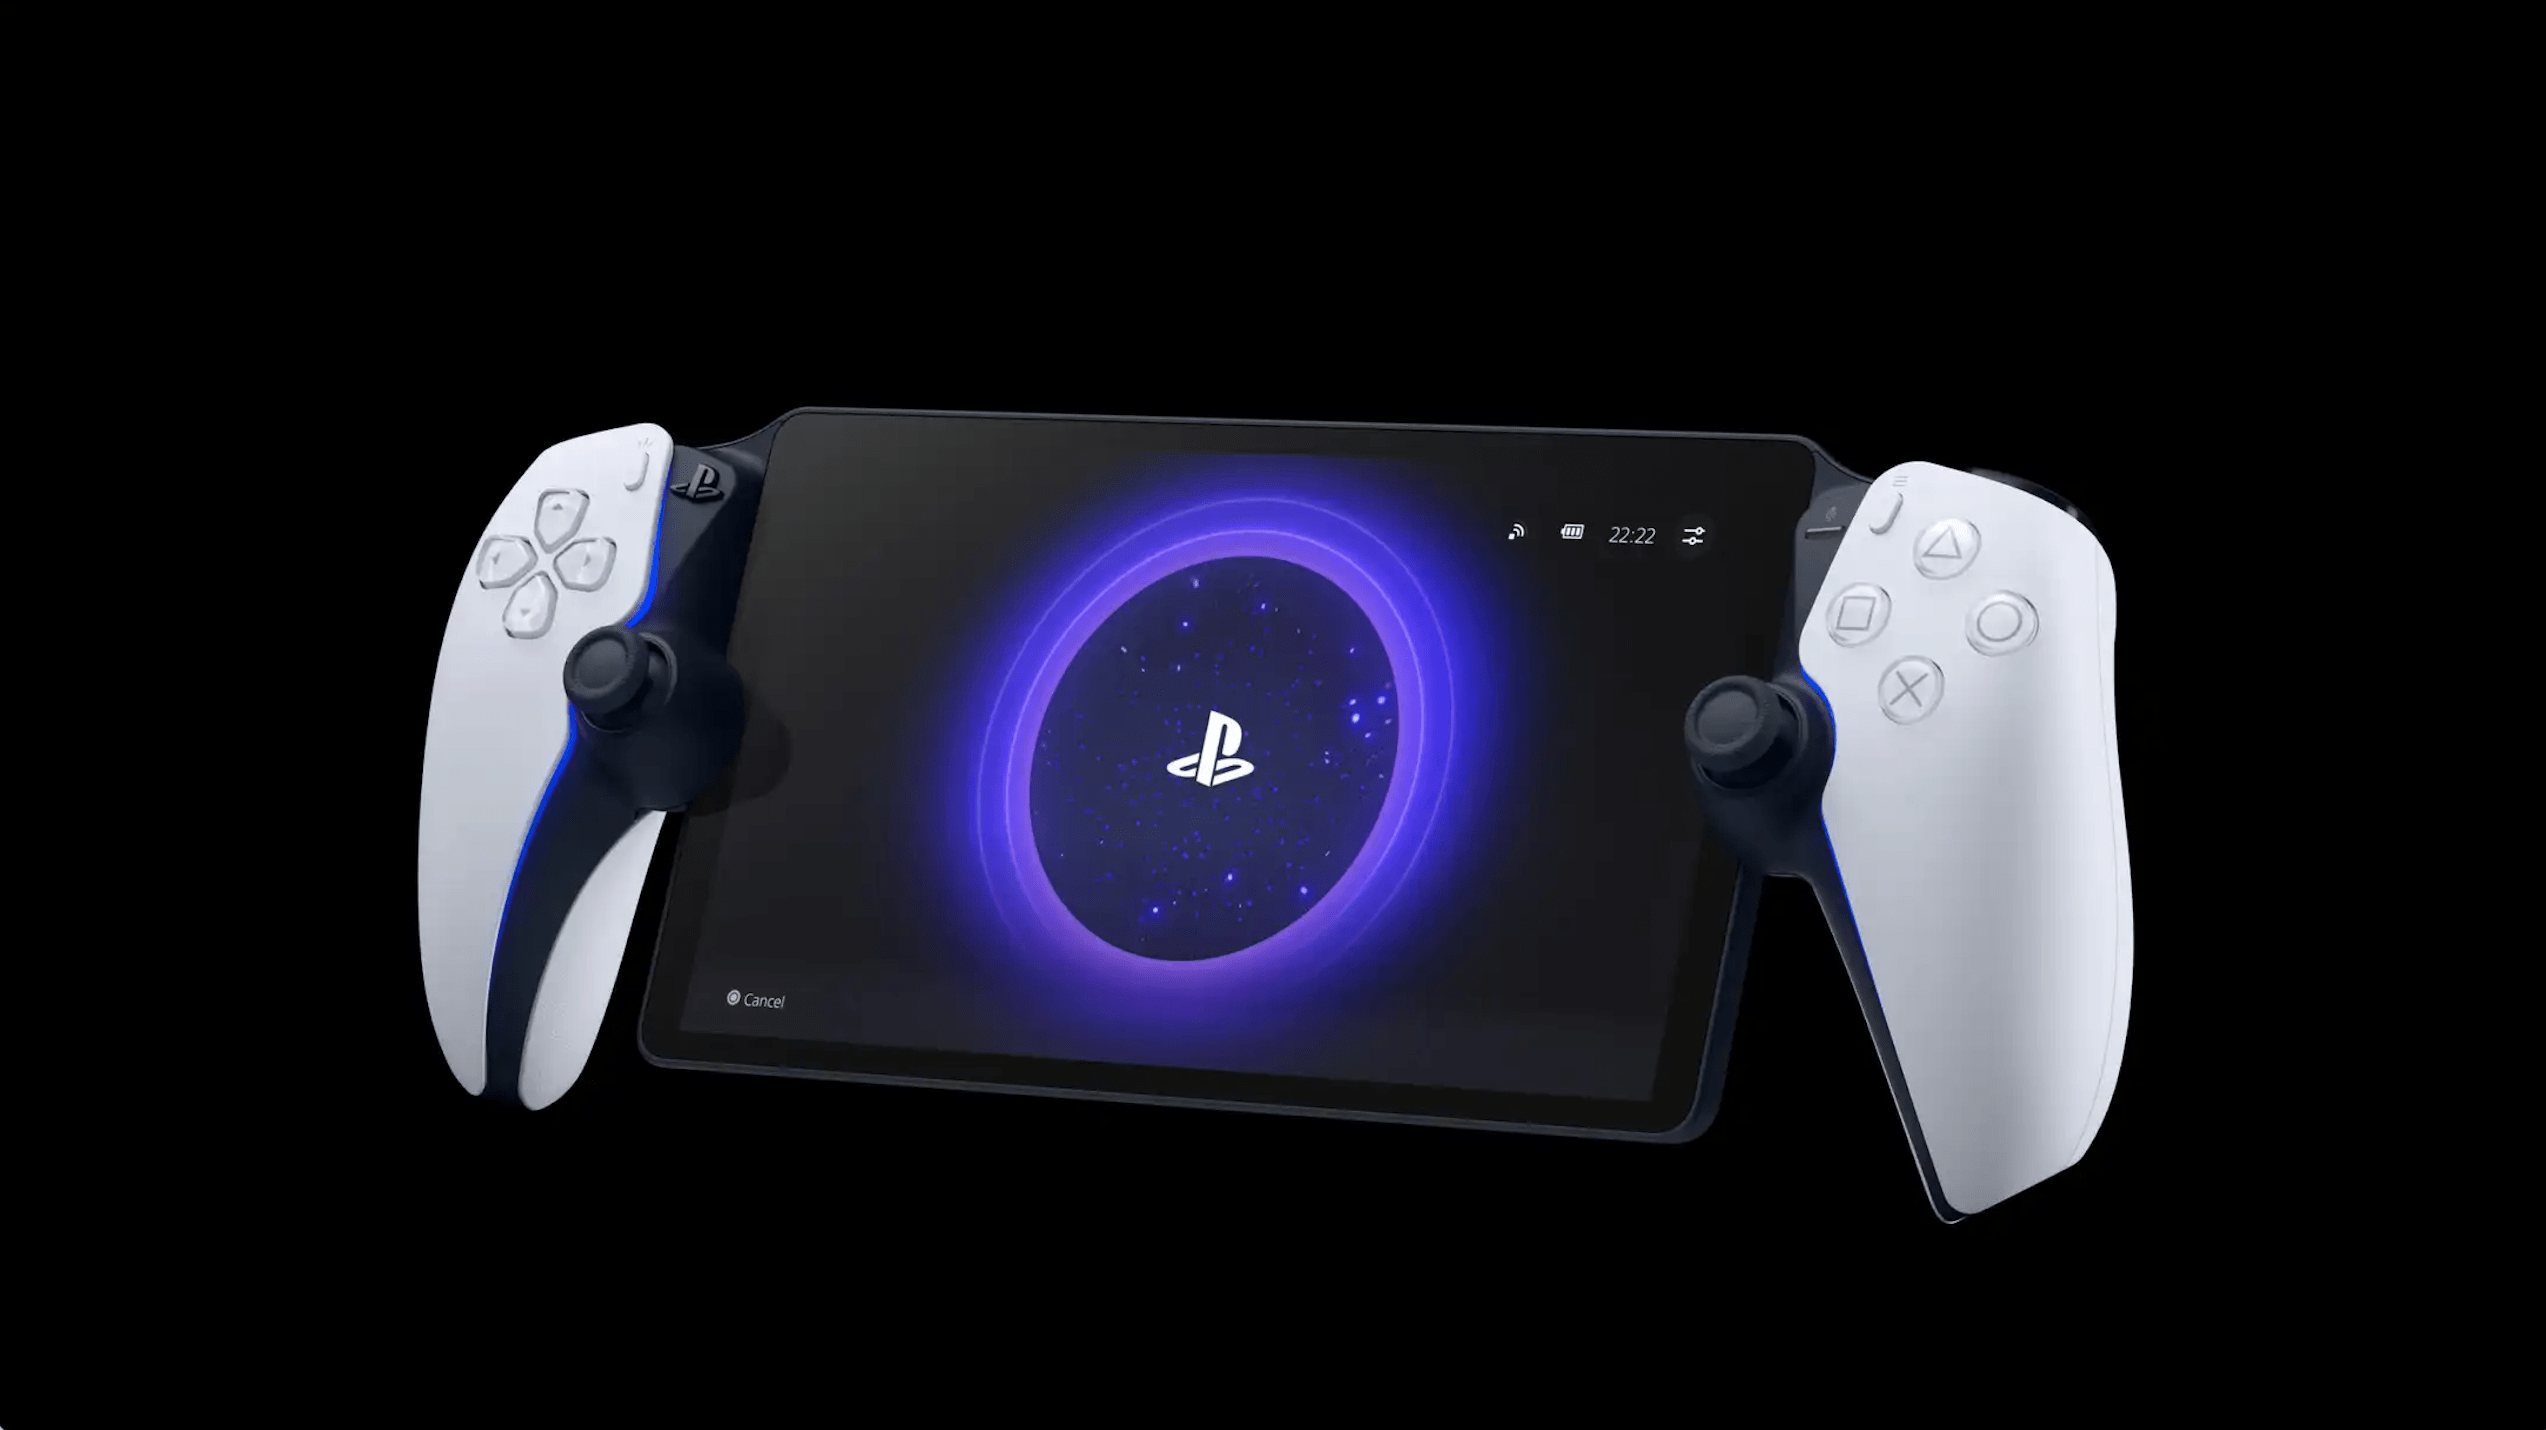 Probando PlayStation Portal, los auriculares Pulse Explore y el headset  inalámbrico Pulse Elite – PlayStation.Blog en español